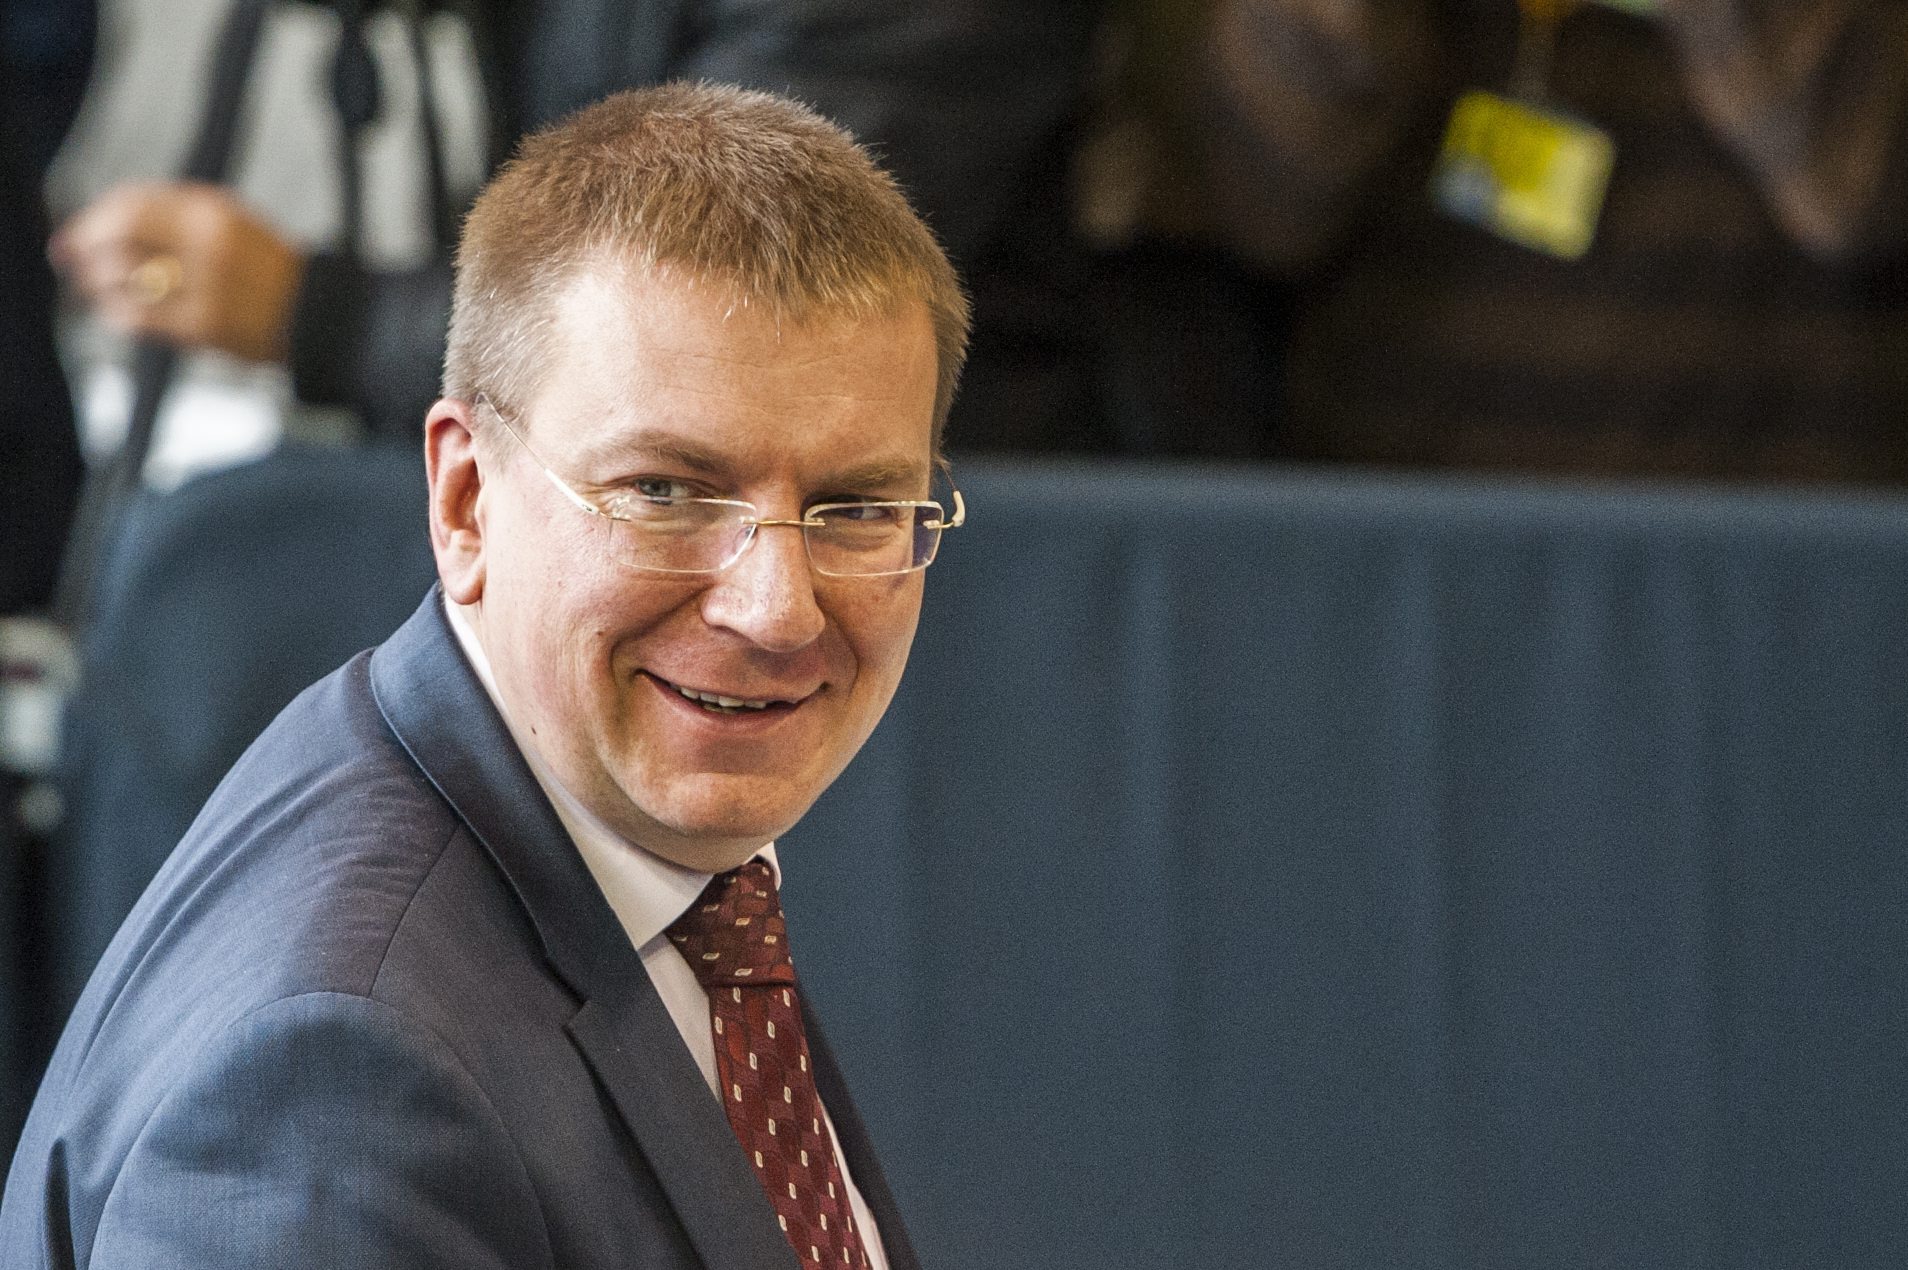 Λετονός υπουργός Εξωτερικών: "Είμαι γκέι"